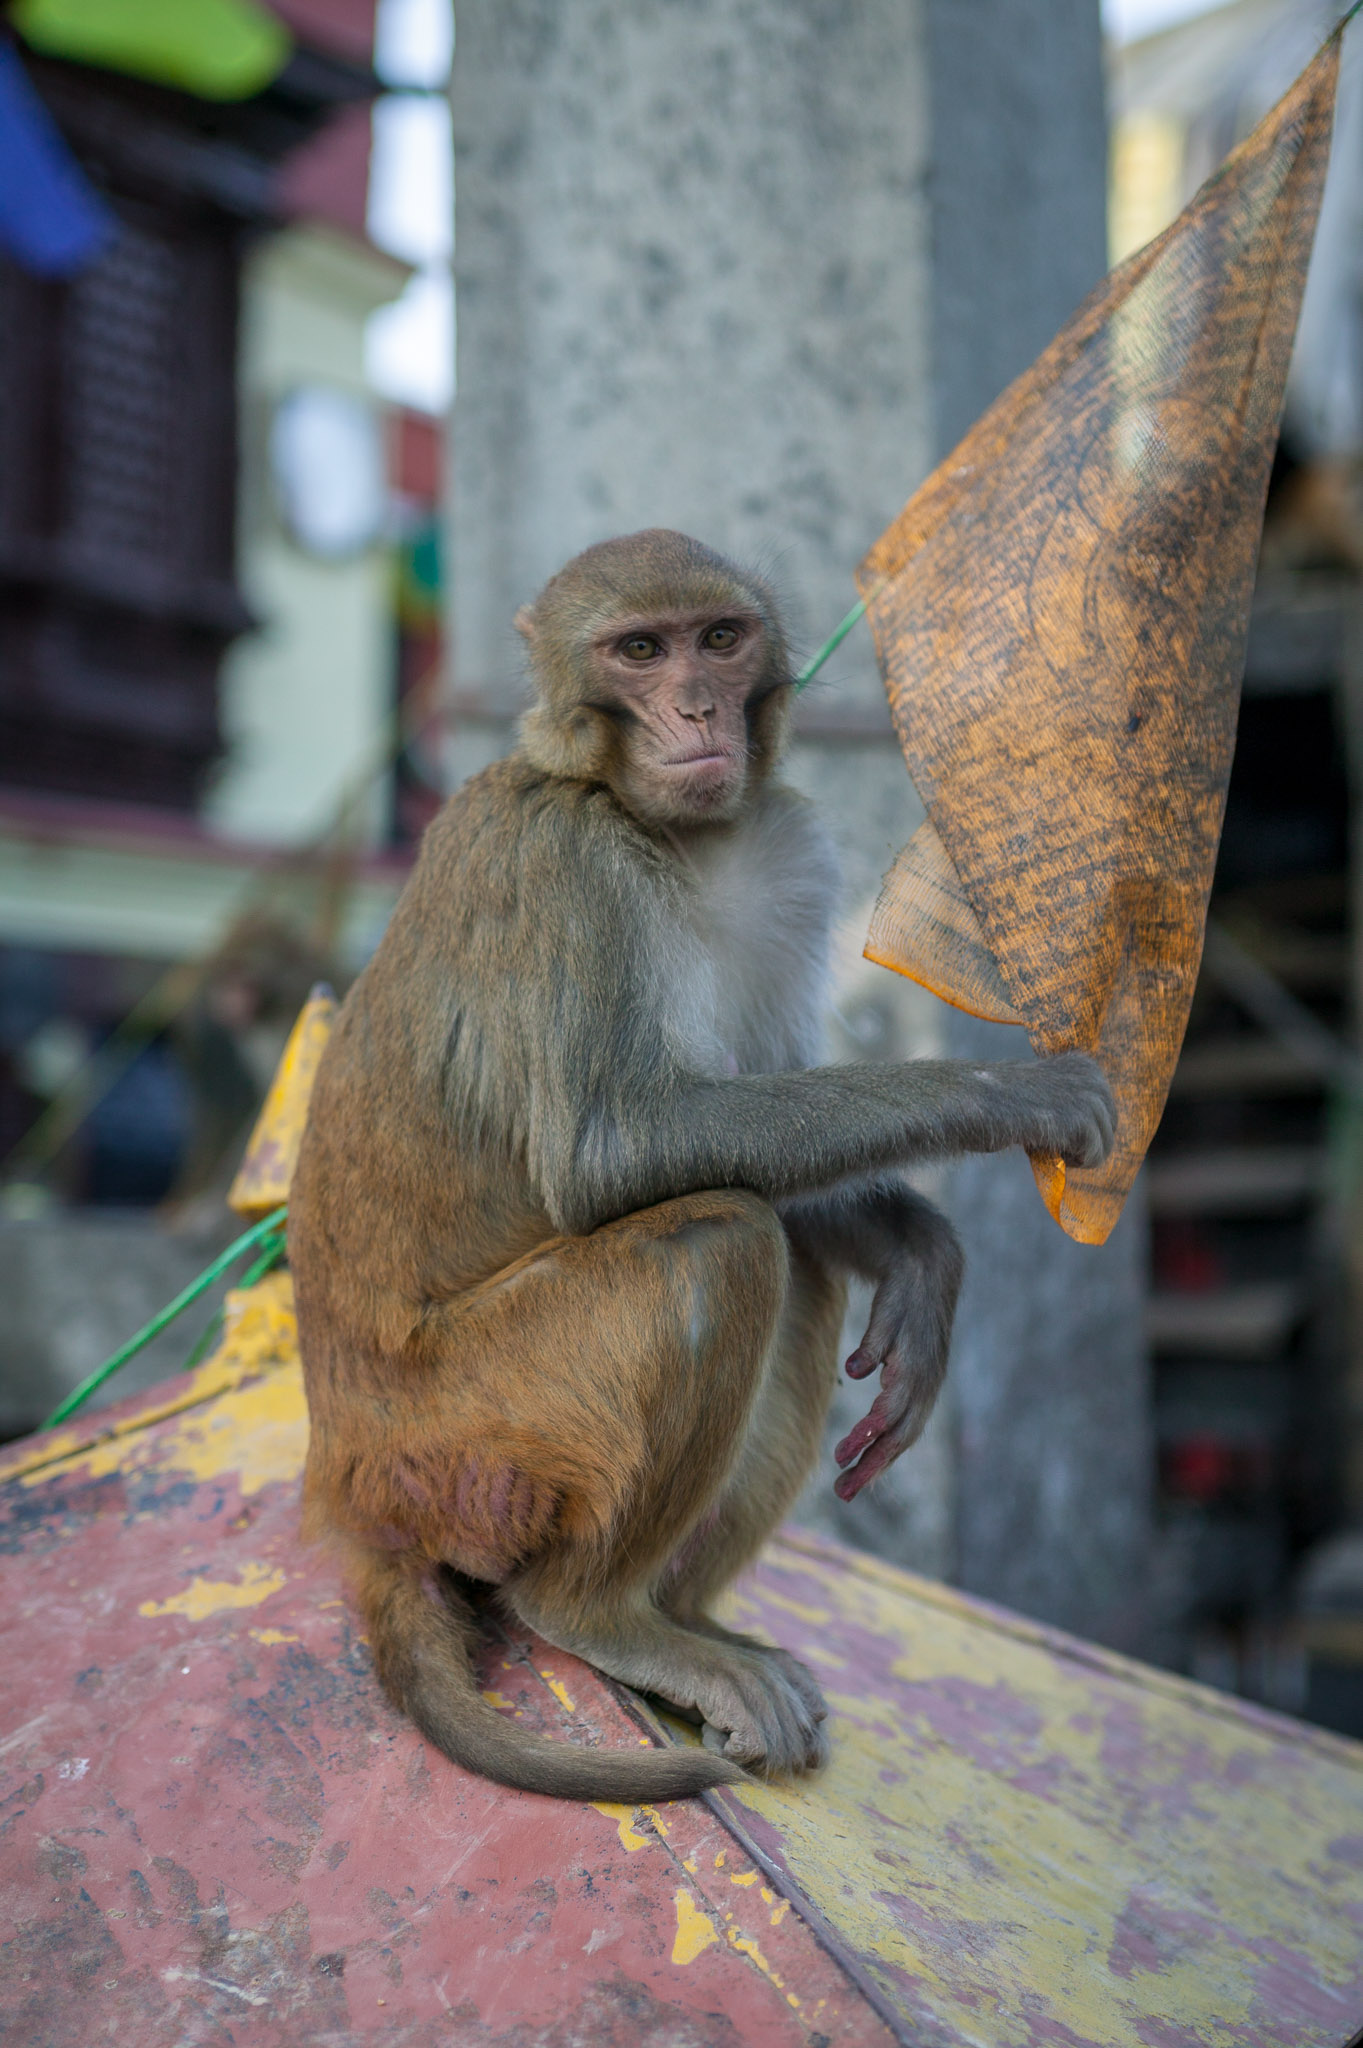 Swayambhunath (or Monkey) Temple